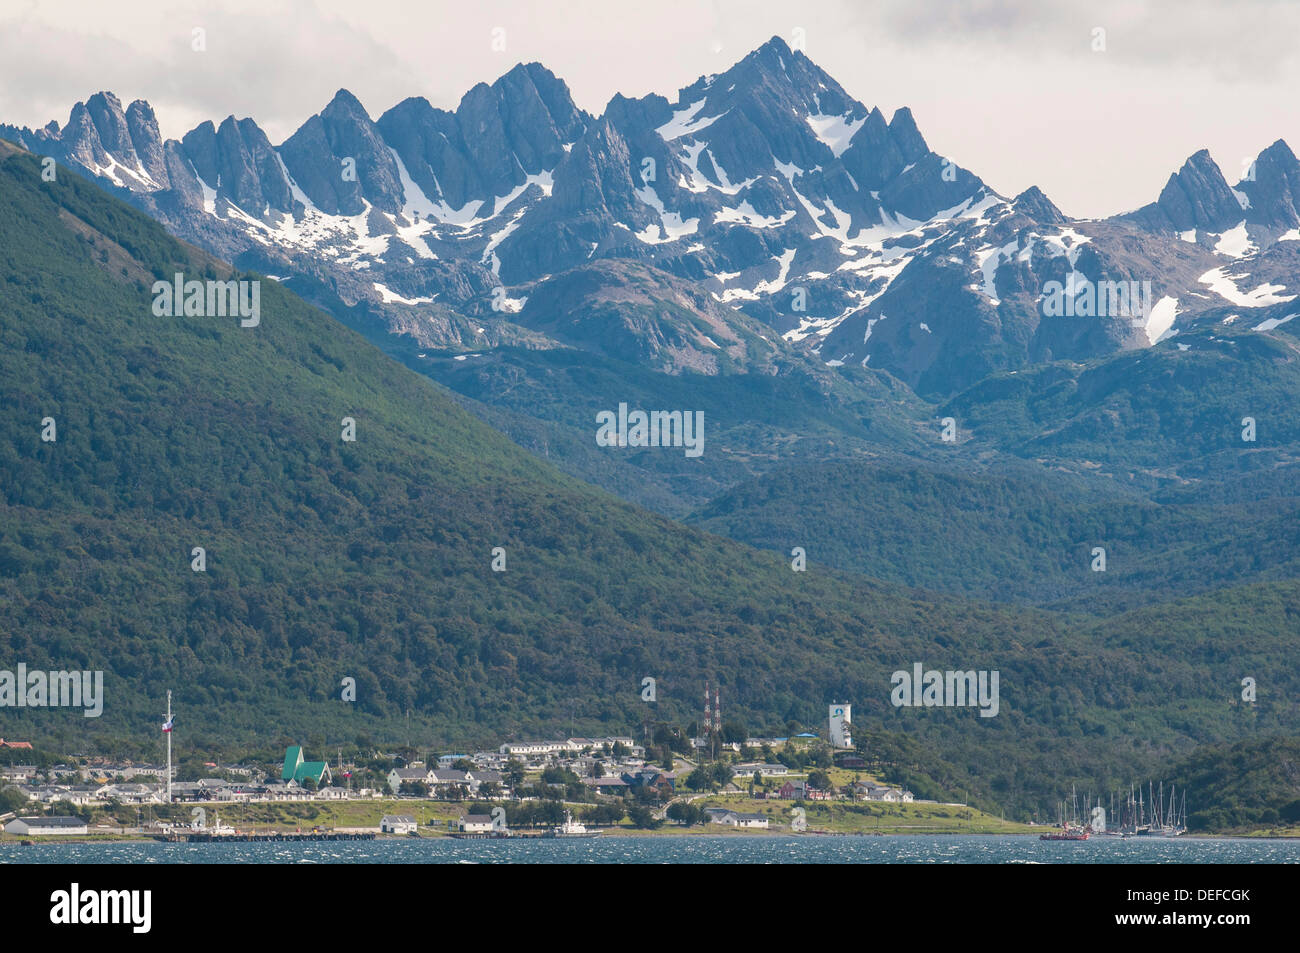 Puerto Wlliams, Beagle Channel, Tierra del Fuego, Chile, South America Stock Photo